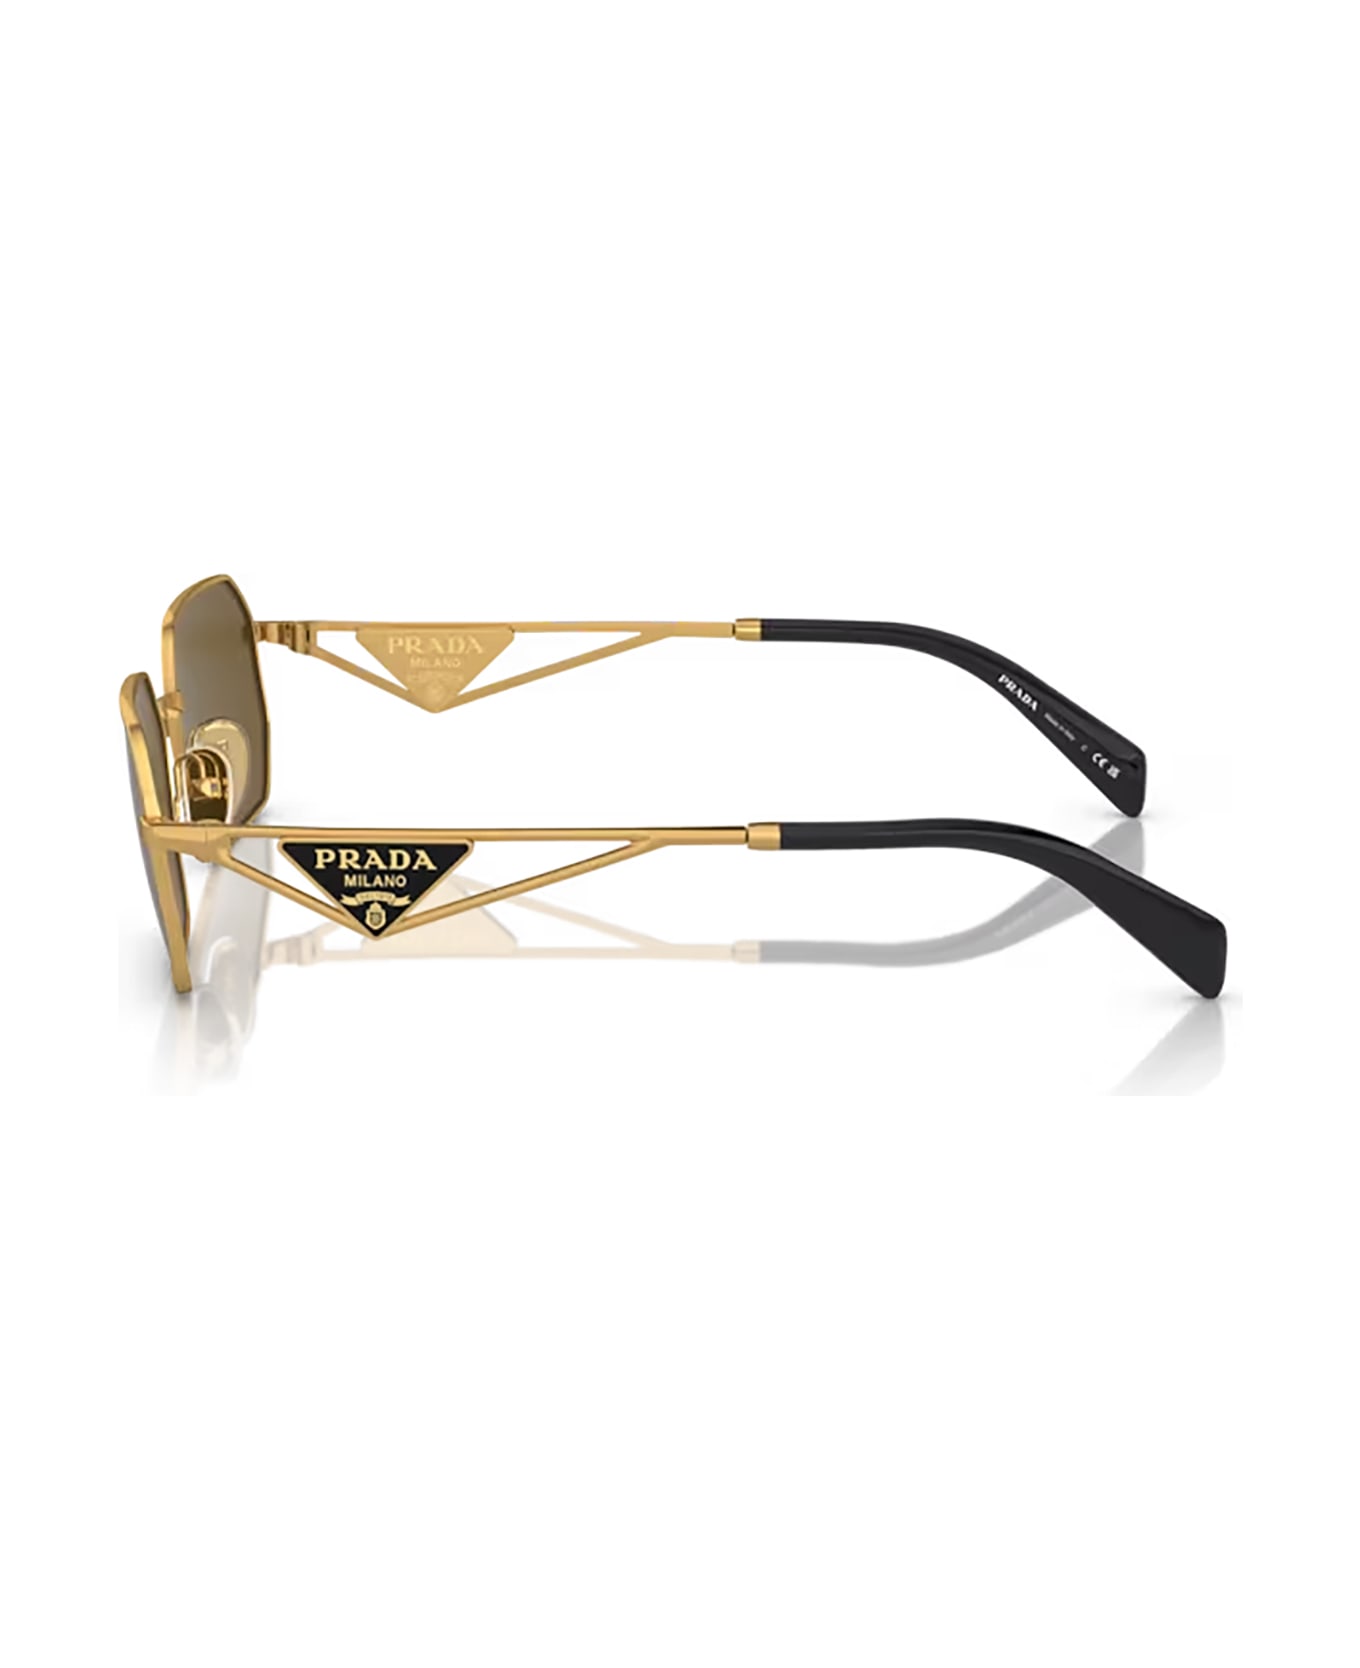 Prada Eyewear Pr A51s Matte Gold Sunglasses - Matte Gold